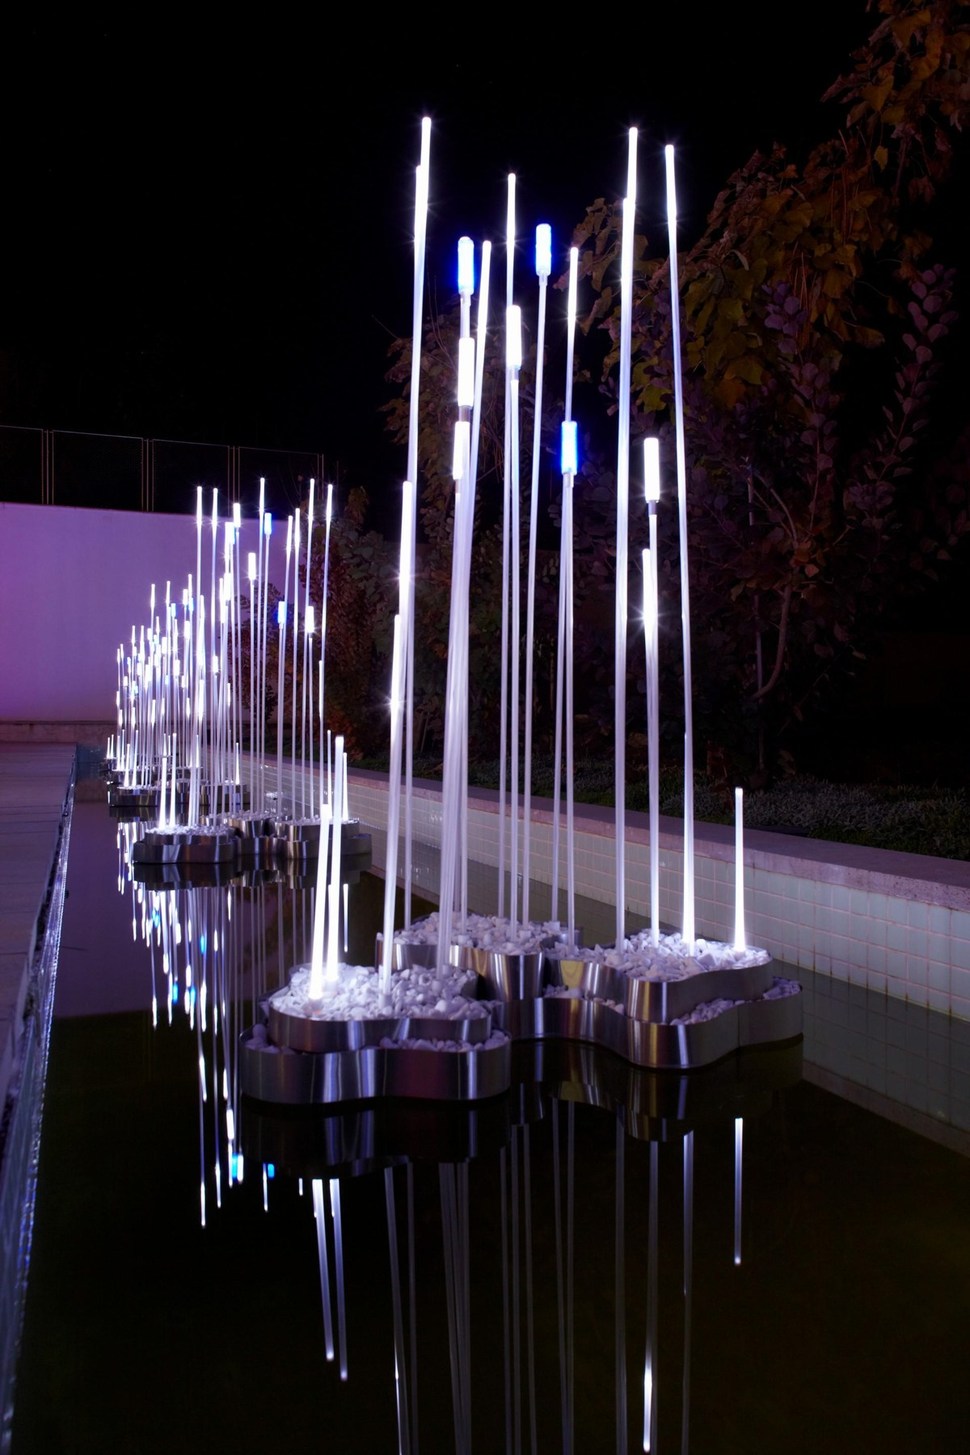 ultramodern-house-with-vibrant-lighting-design-focus-6-light-sculptures.jpg